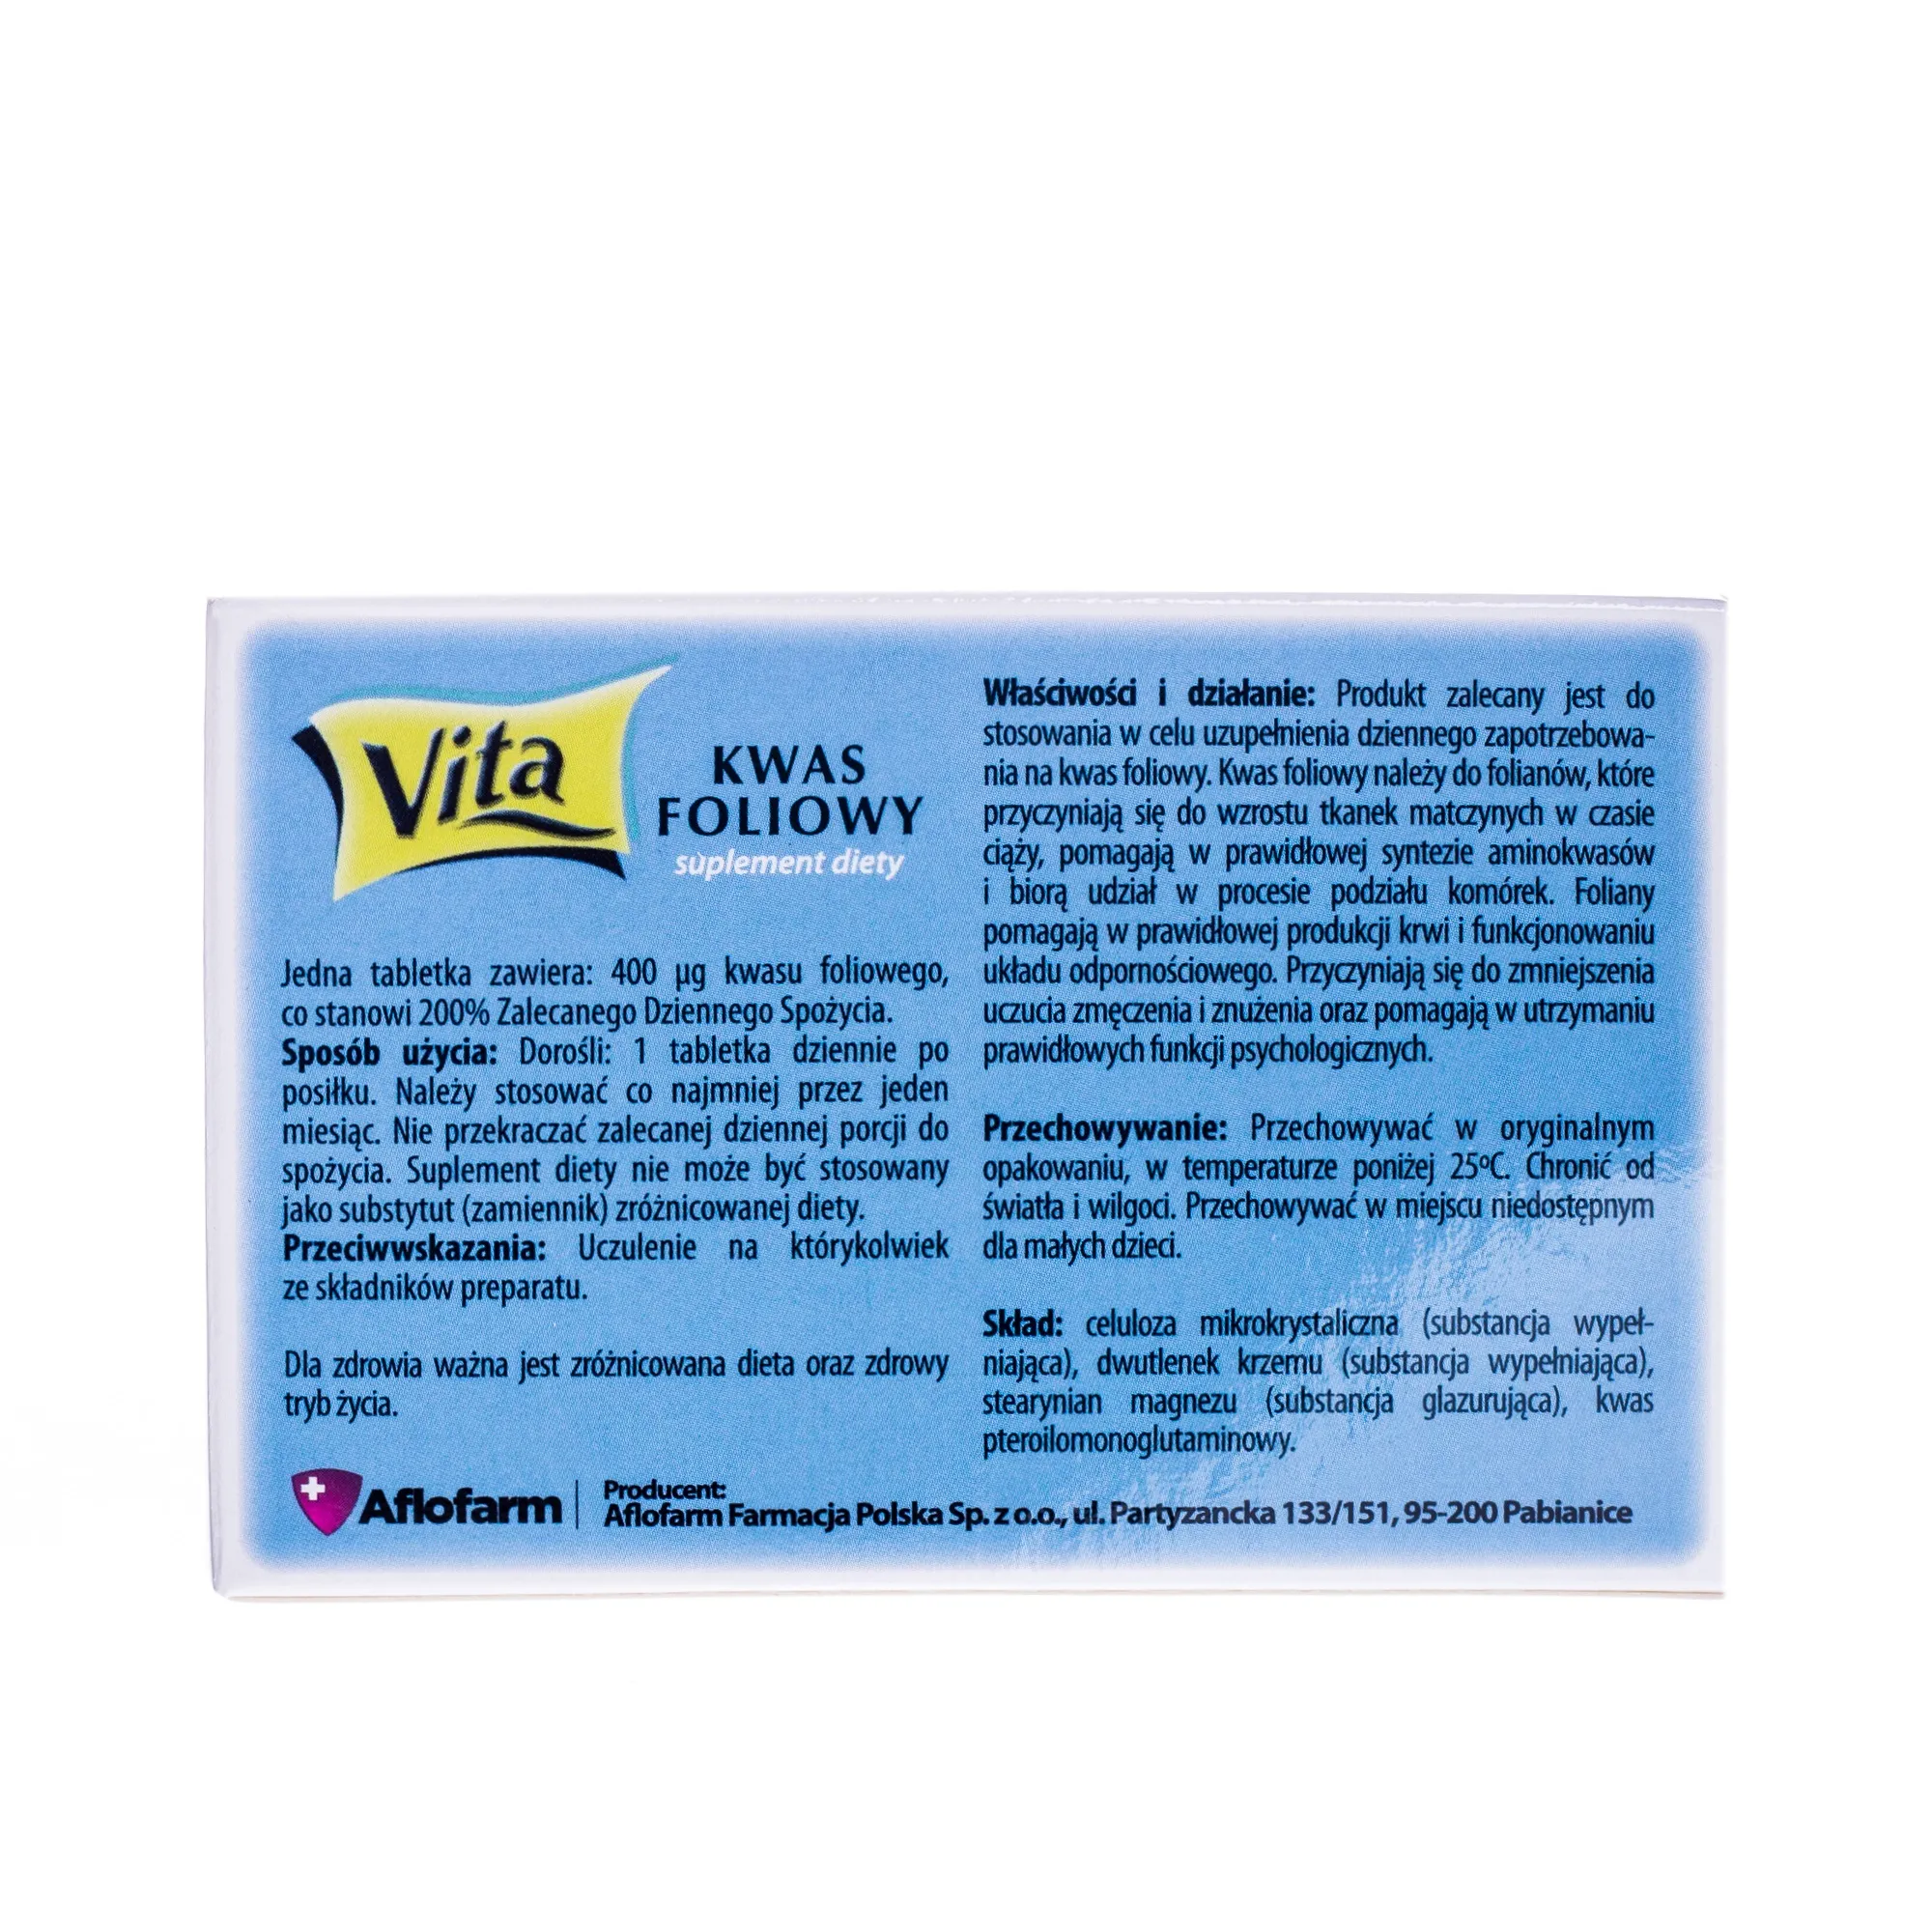 Kwas foliowy Vita, suplement diety, 30 tabletek 